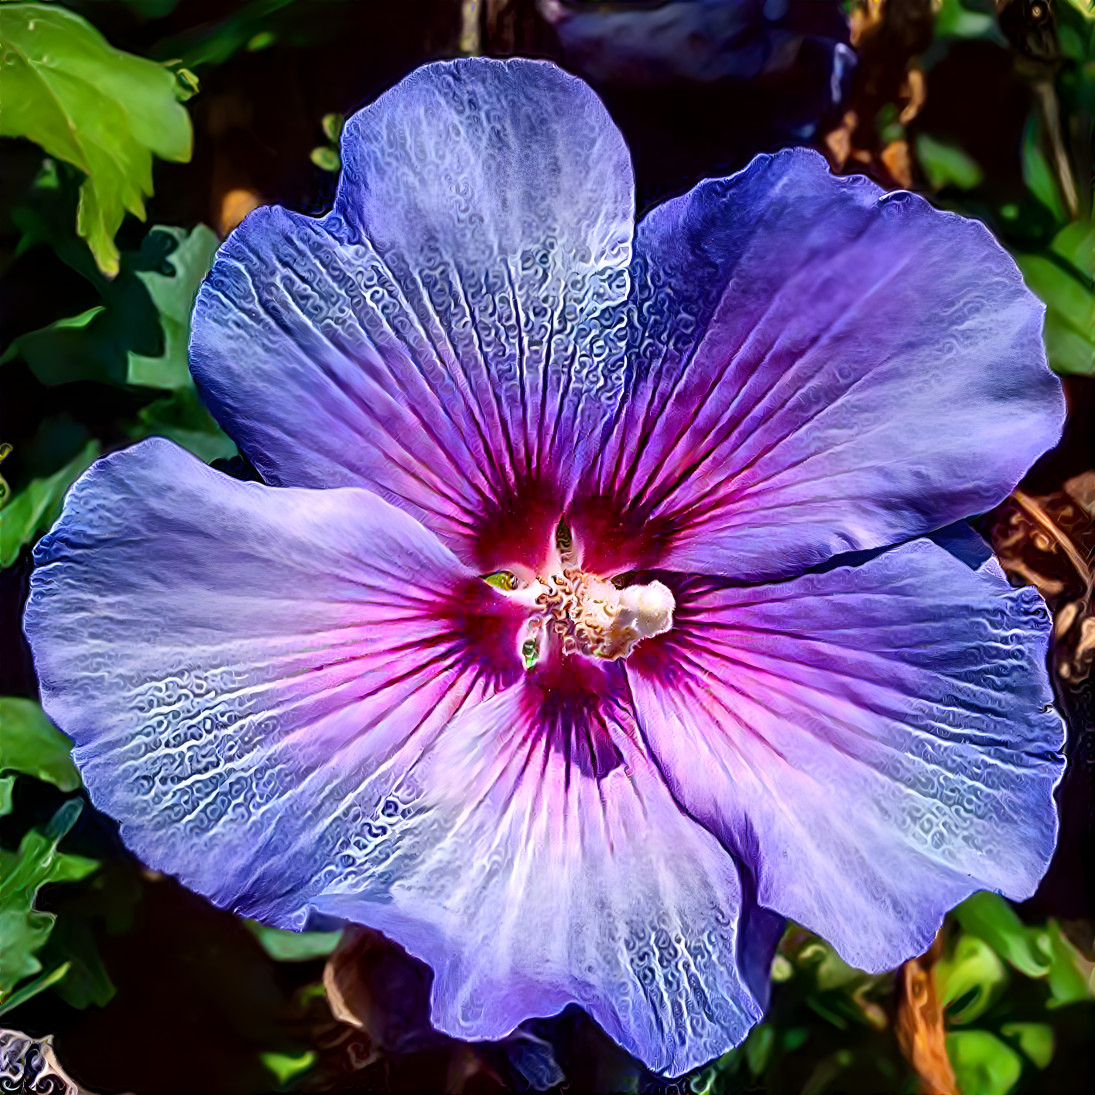 "Purple Hibiscus"